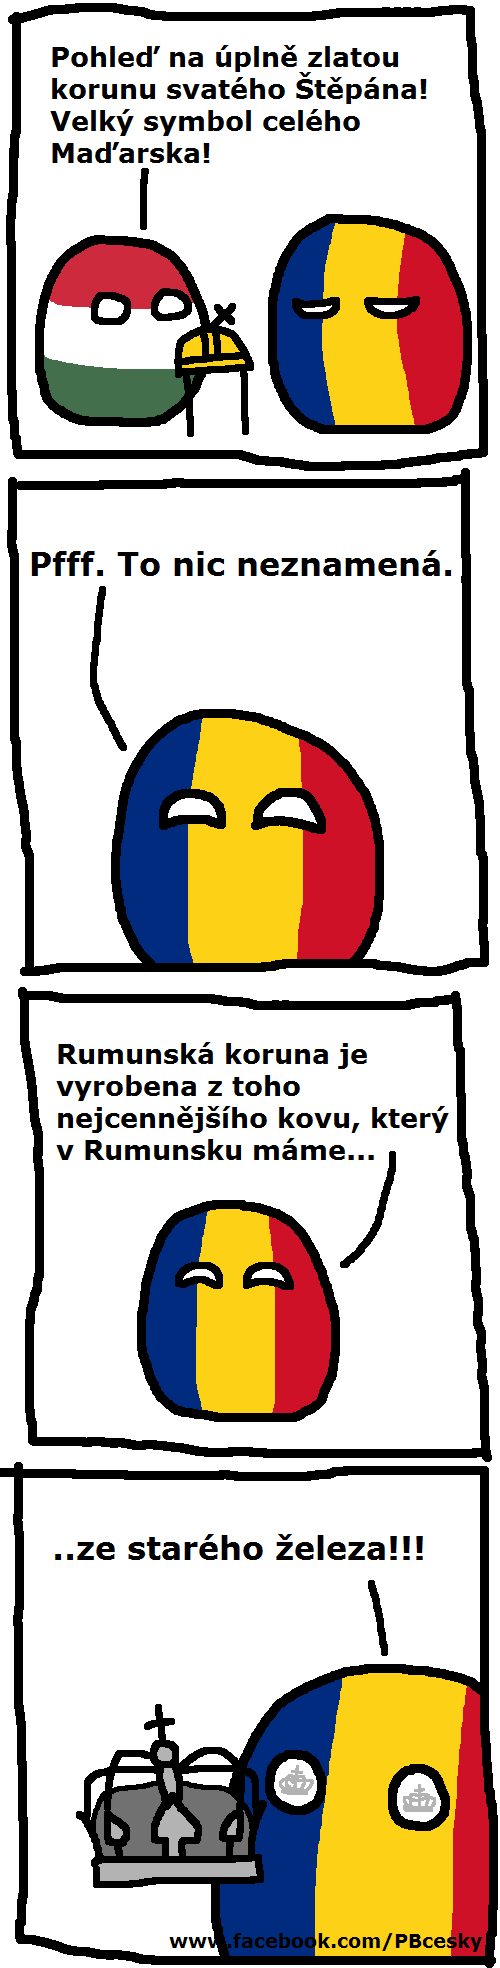  Rumunská koruna 